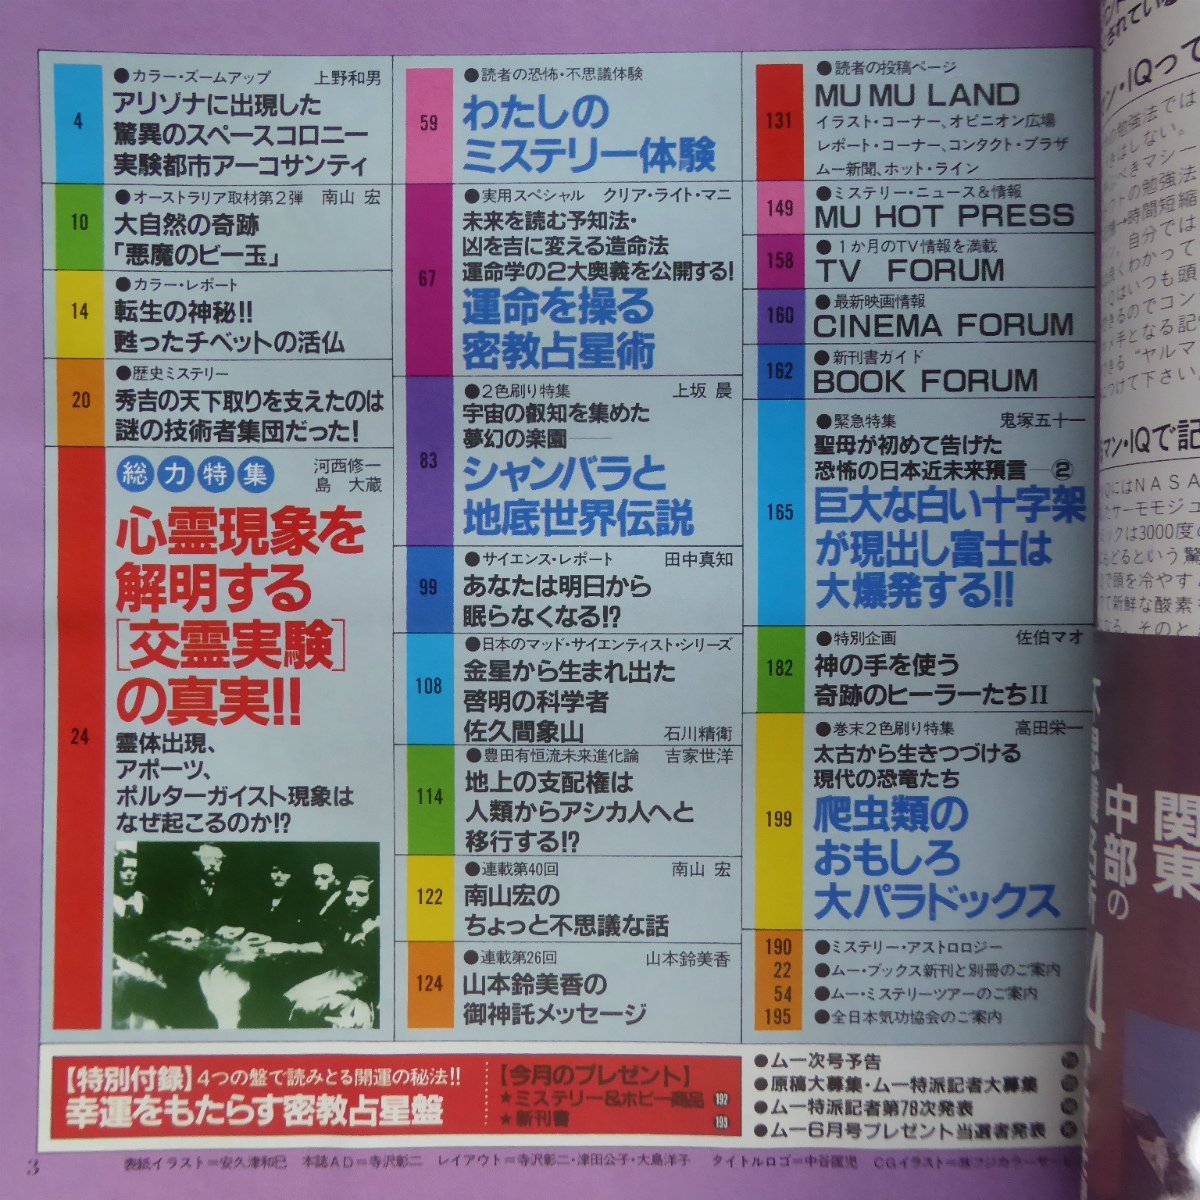 θ8/ occult magazine [ monthly m-]No.81[ heart . phenomenon .. Akira make [.. experiment ]. genuine real!!/ car n rose . ground bottom world legend /... star ./.. interval . mountain ]